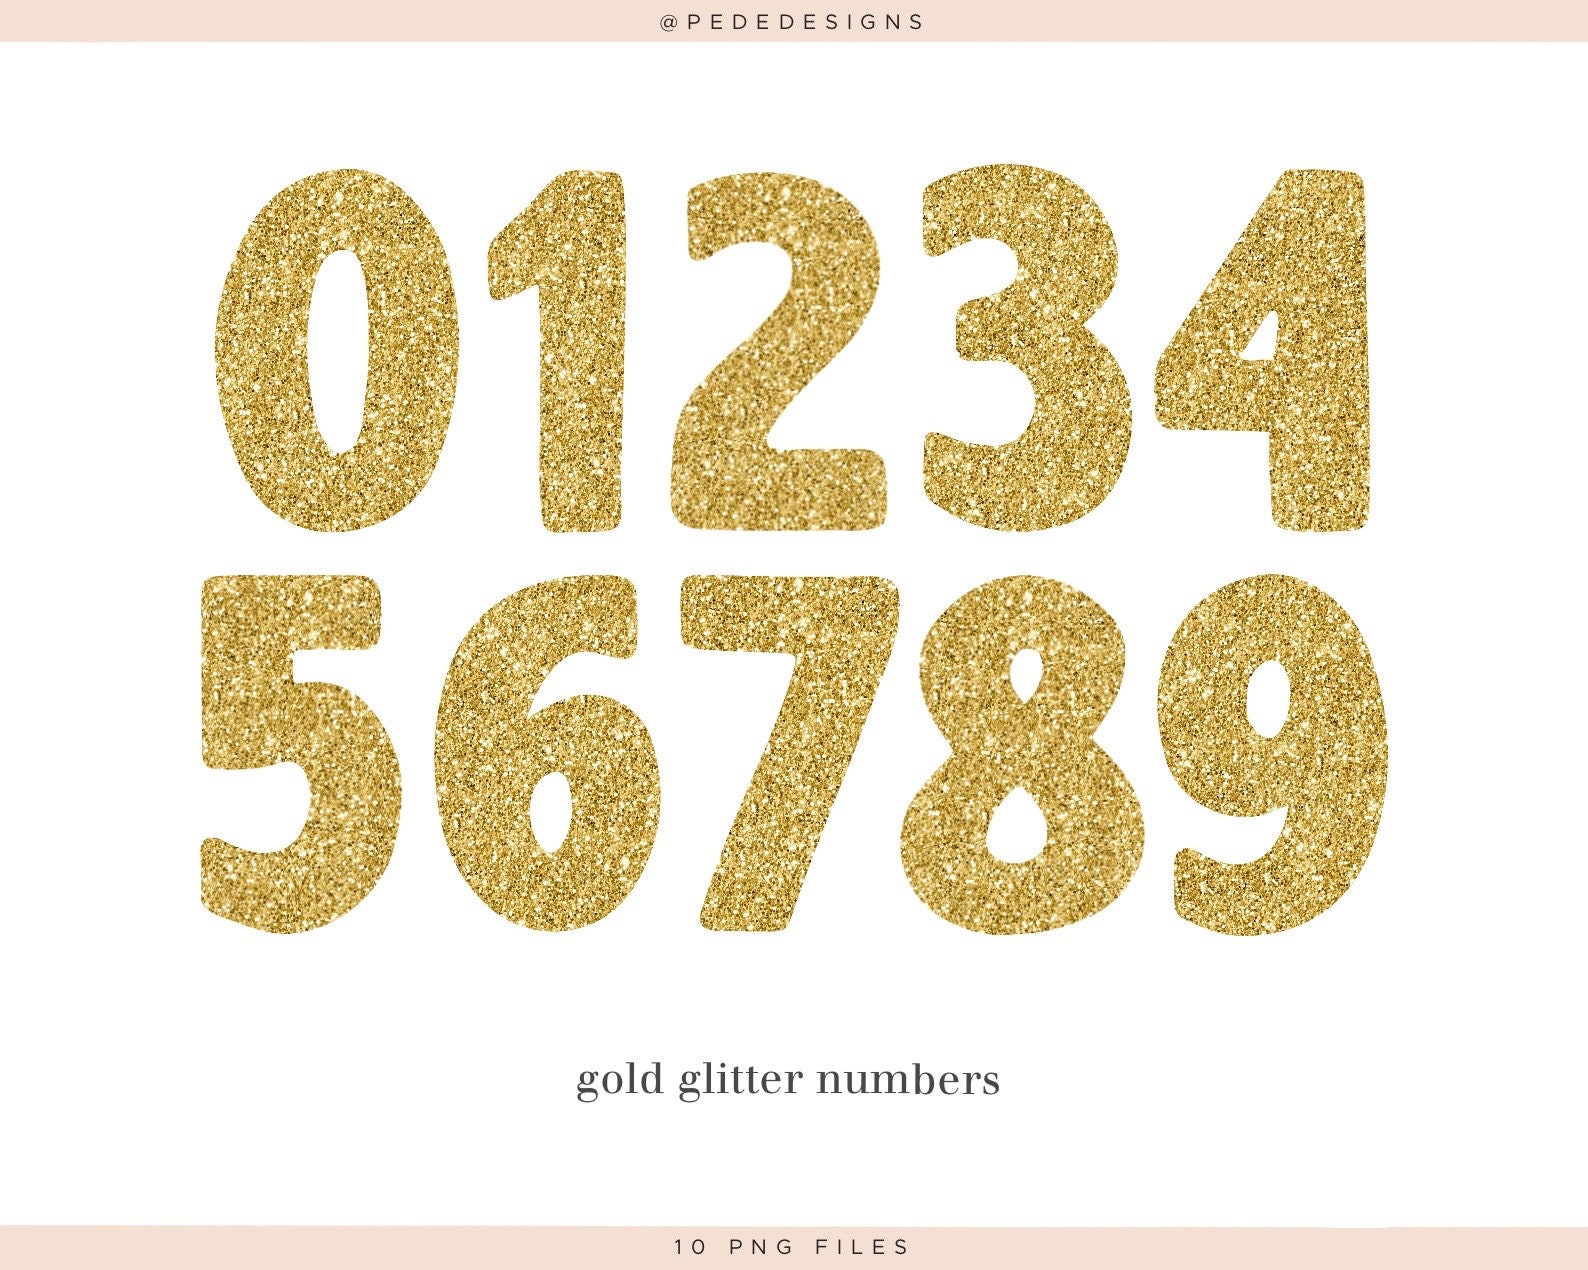 Gold Bar - Metallic Glitter – Glitters Matter®